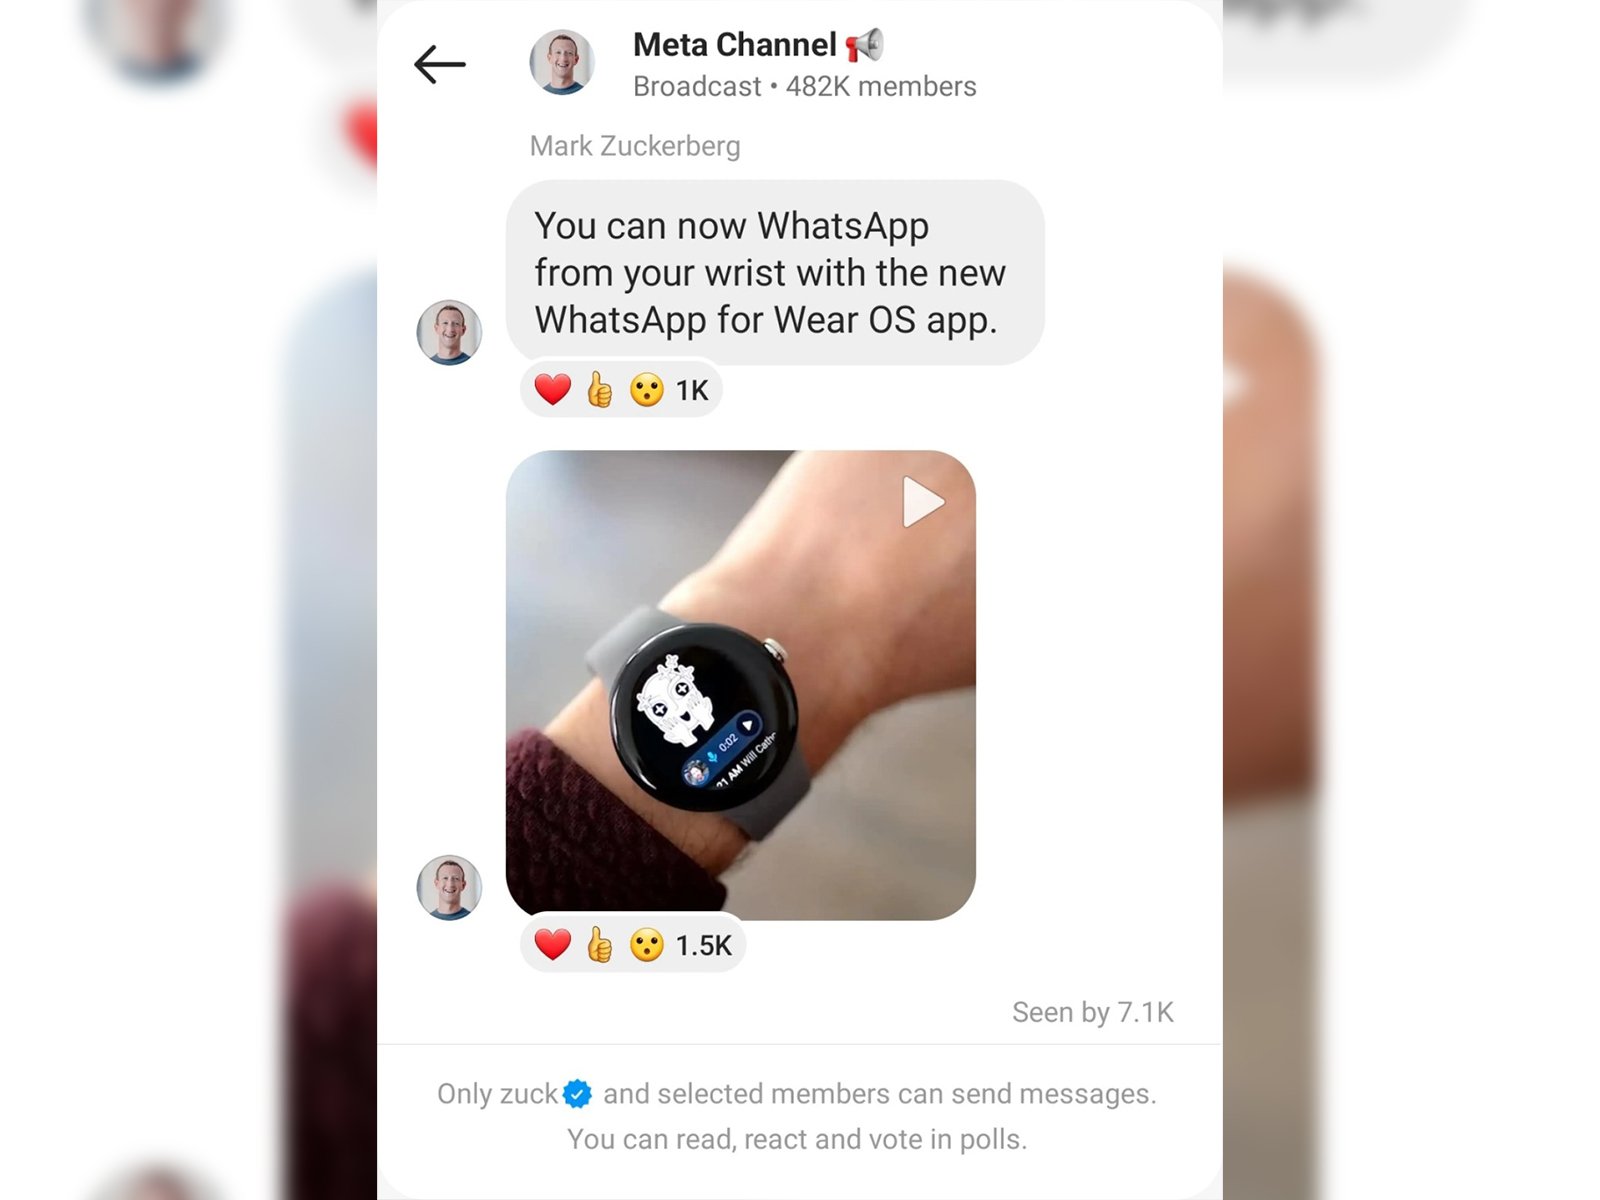 whatsapp smartwatch wear os